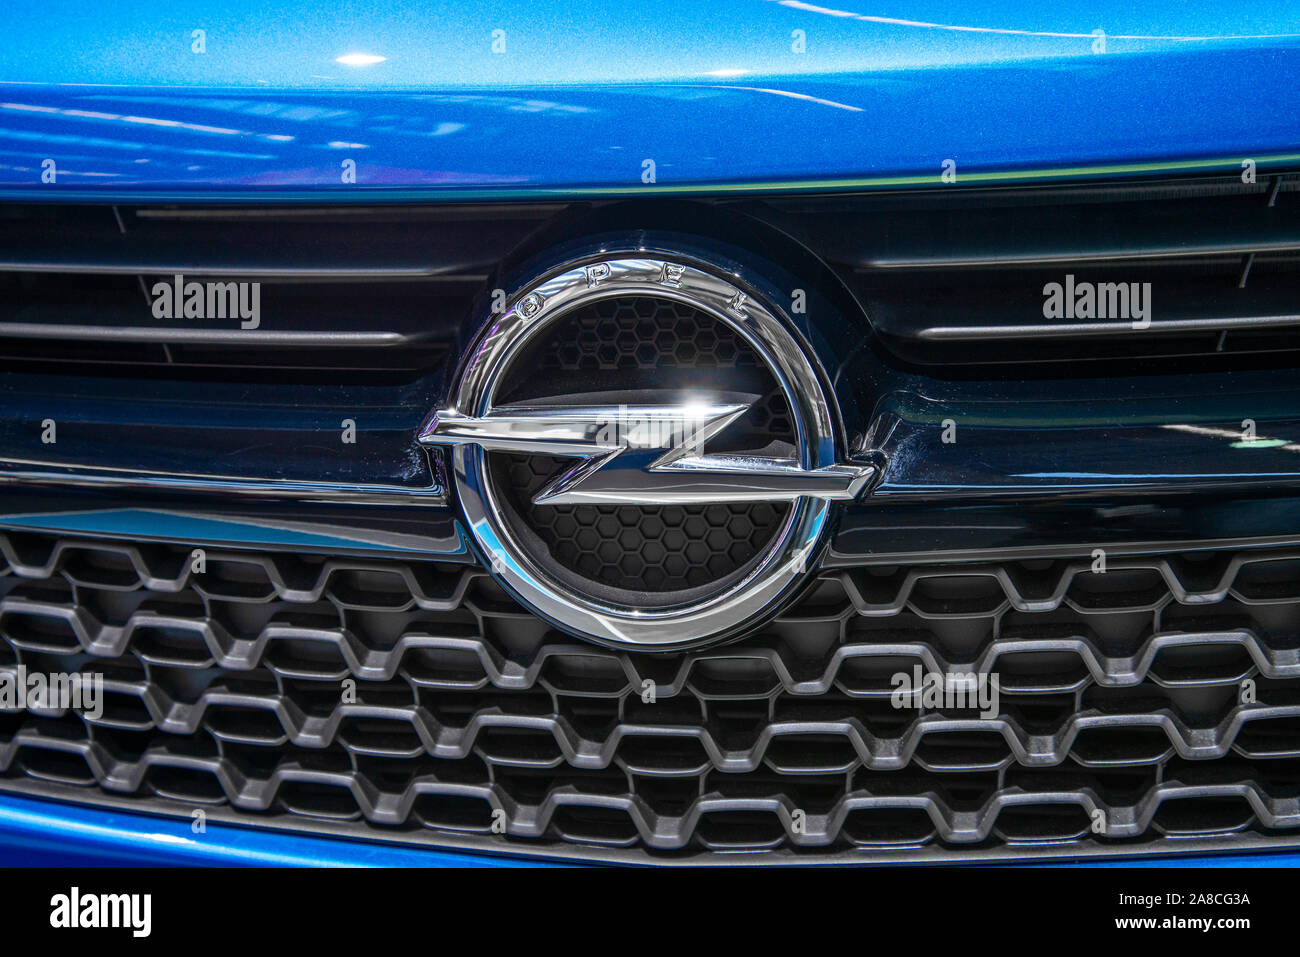 Das Logo von Opel auf ein blaues Auto dieser Marke Stockfoto